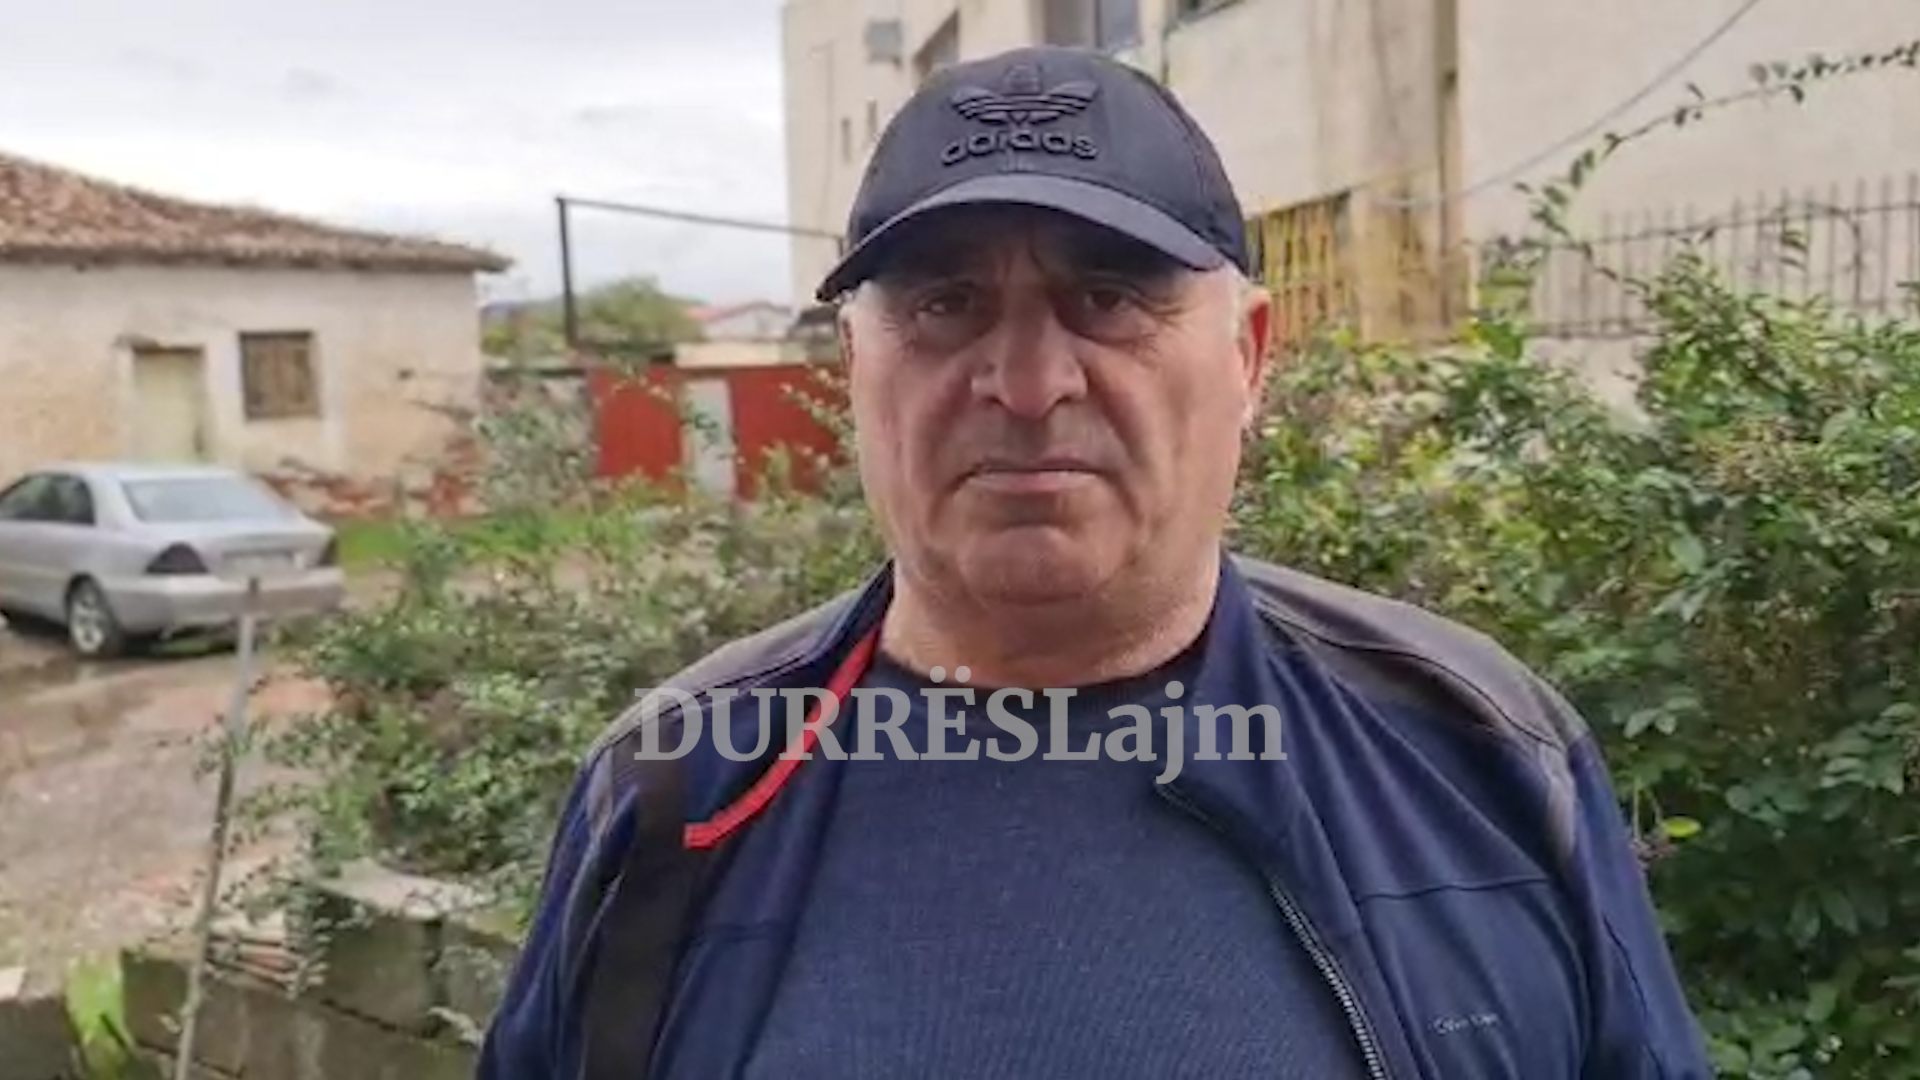 Flet qytetari që debatoi me kryeministrin Rama gjatë takimit në Durrës: Më bullizoi, shoqërohej me njerëz problematikë (VIDEO)